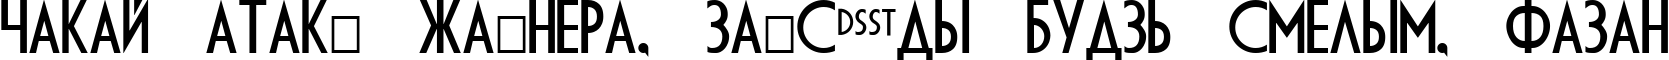 Пример написания шрифтом DS Diploma текста на белорусском